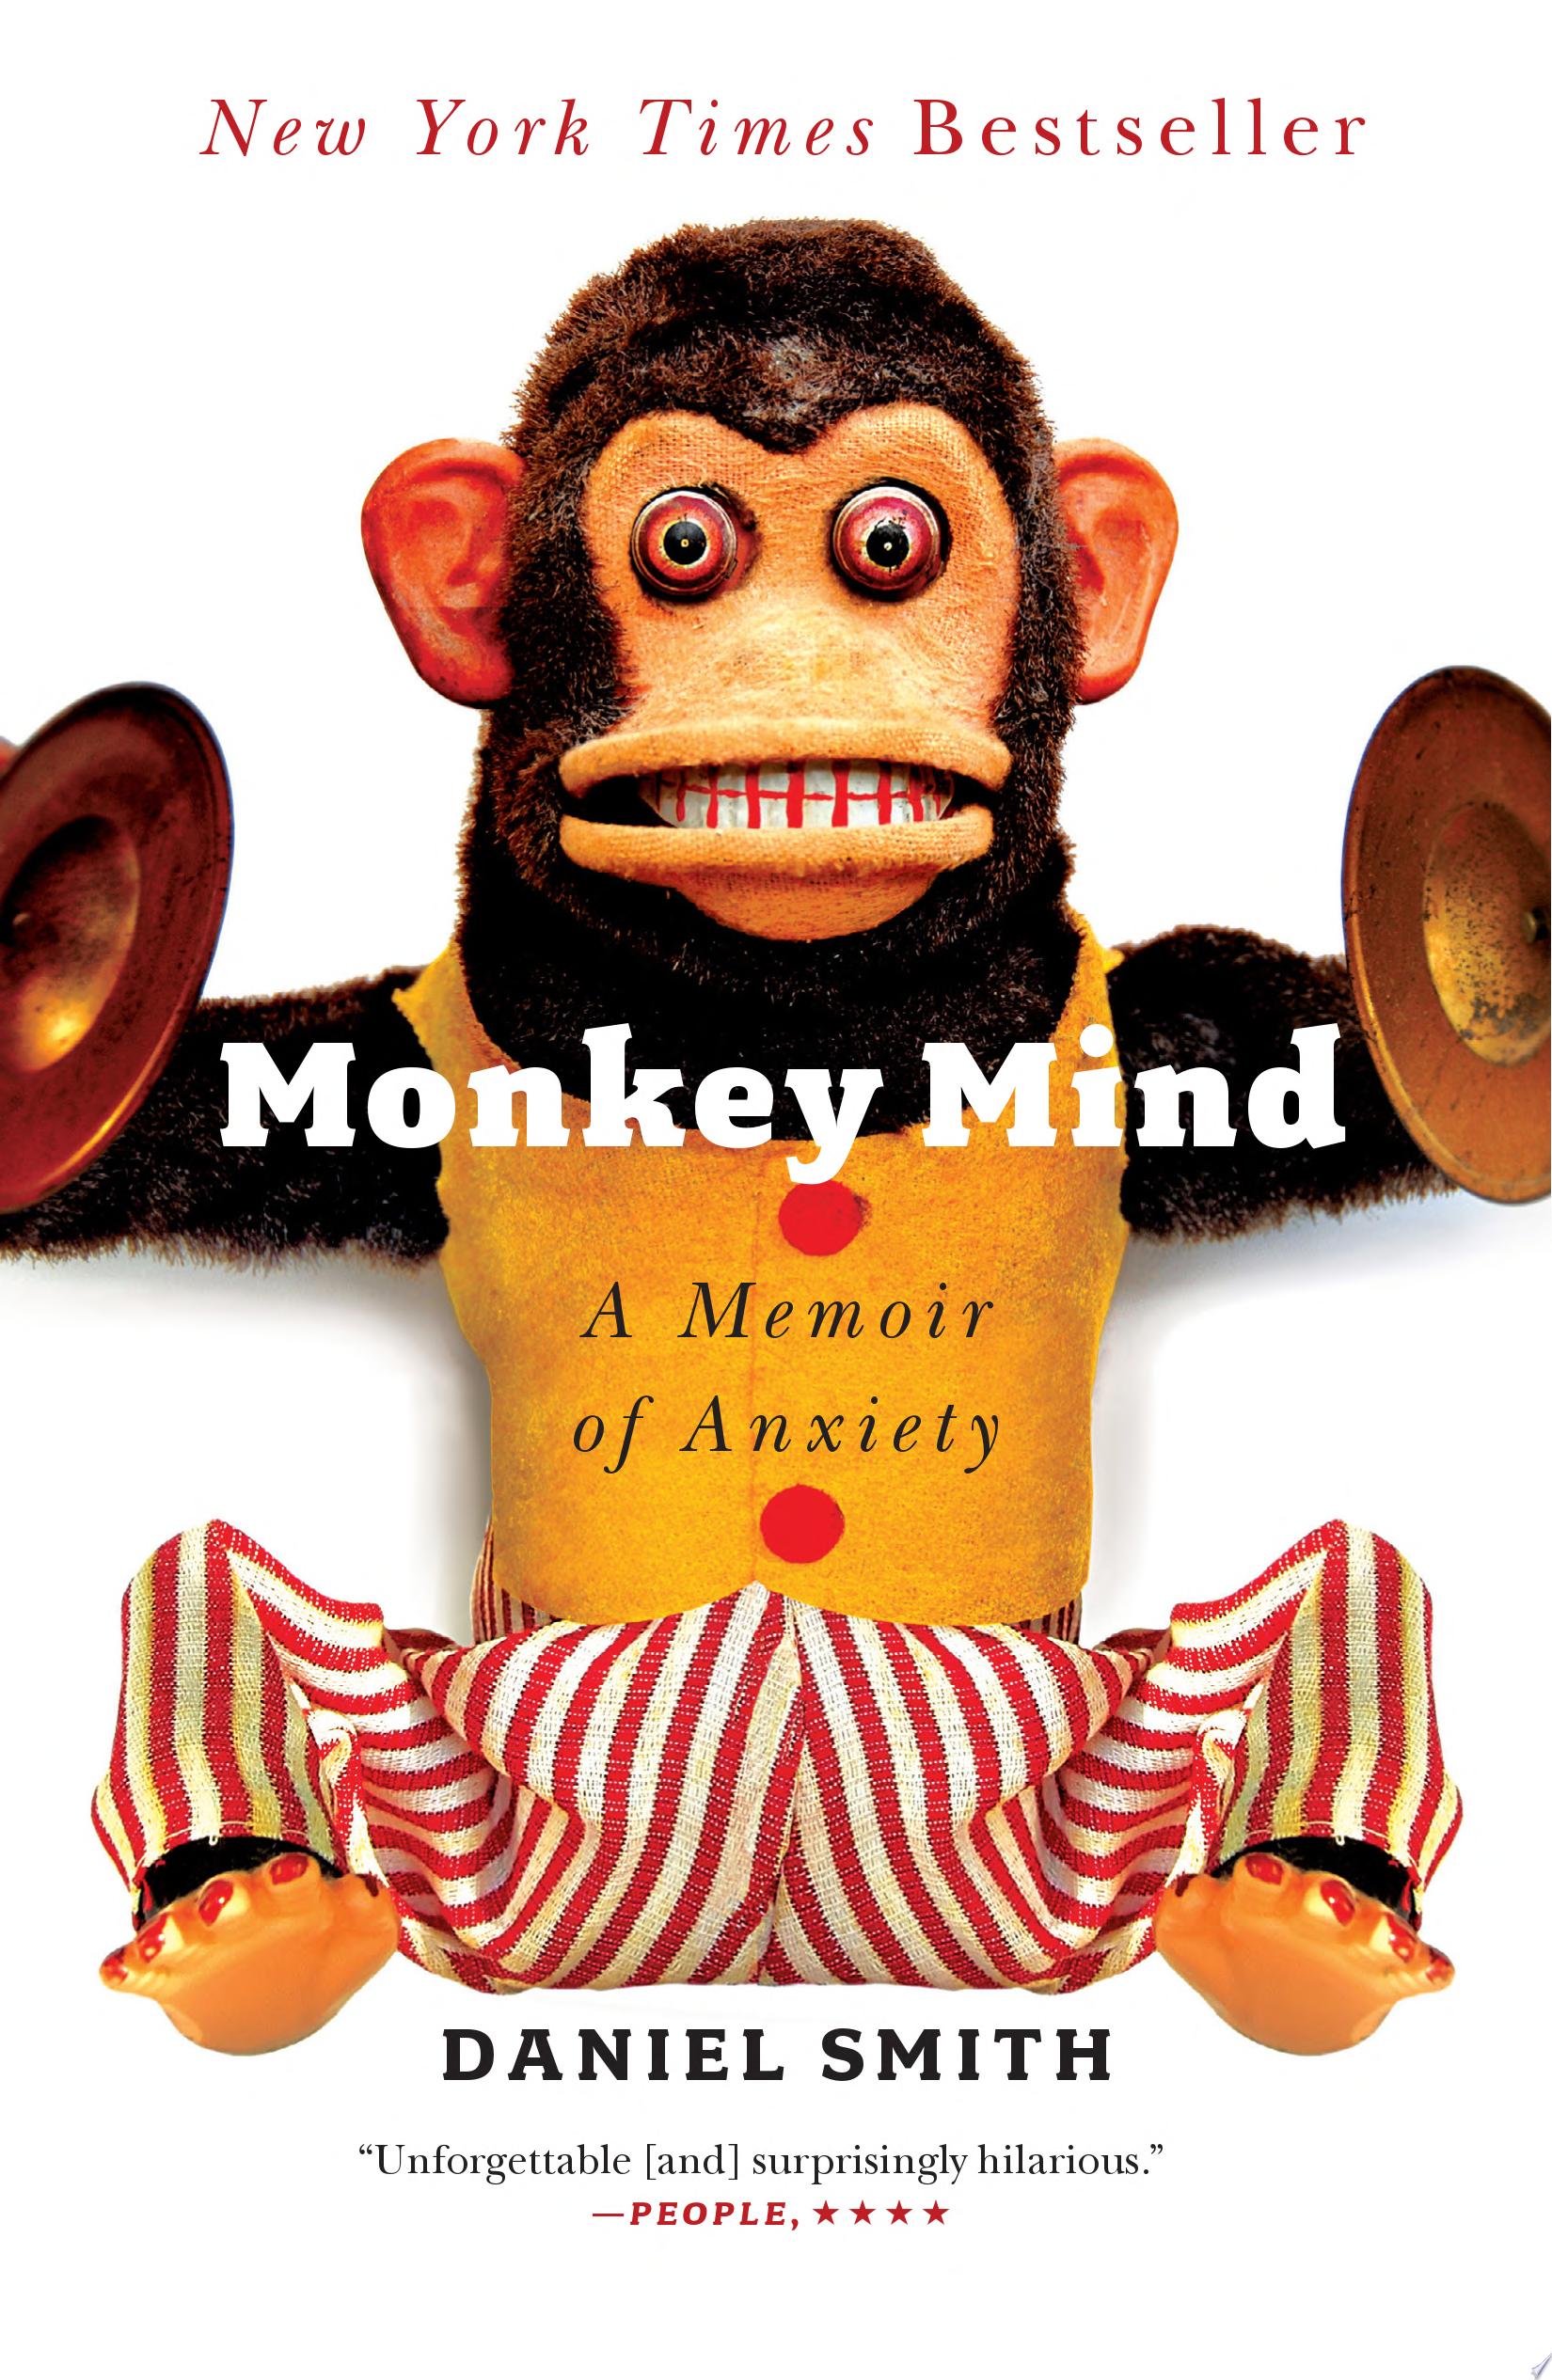 Image for "Monkey Mind"